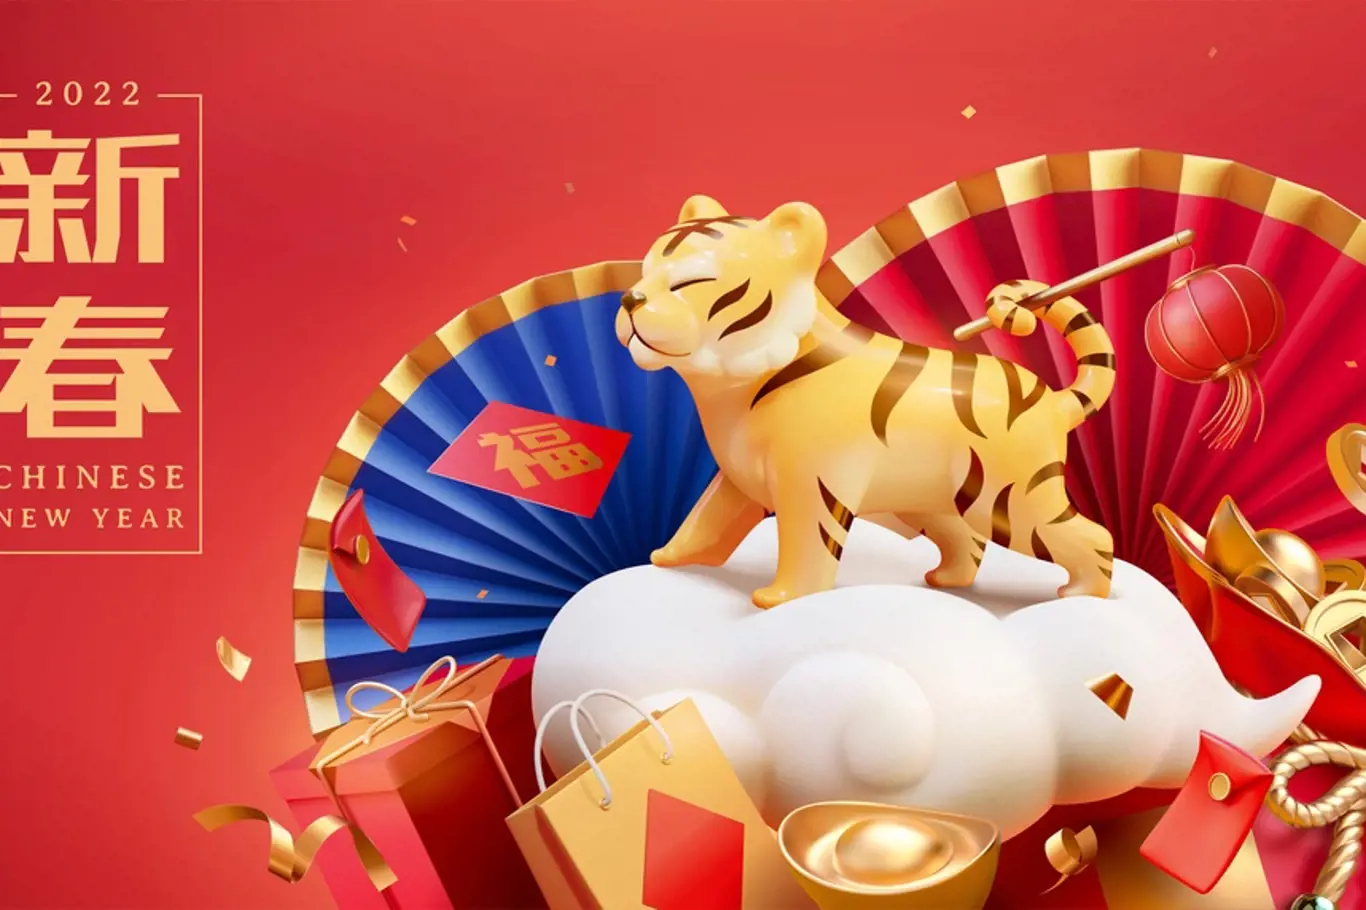 Víte, co vás čeká v roce 2022 podle čínského horoskopu?